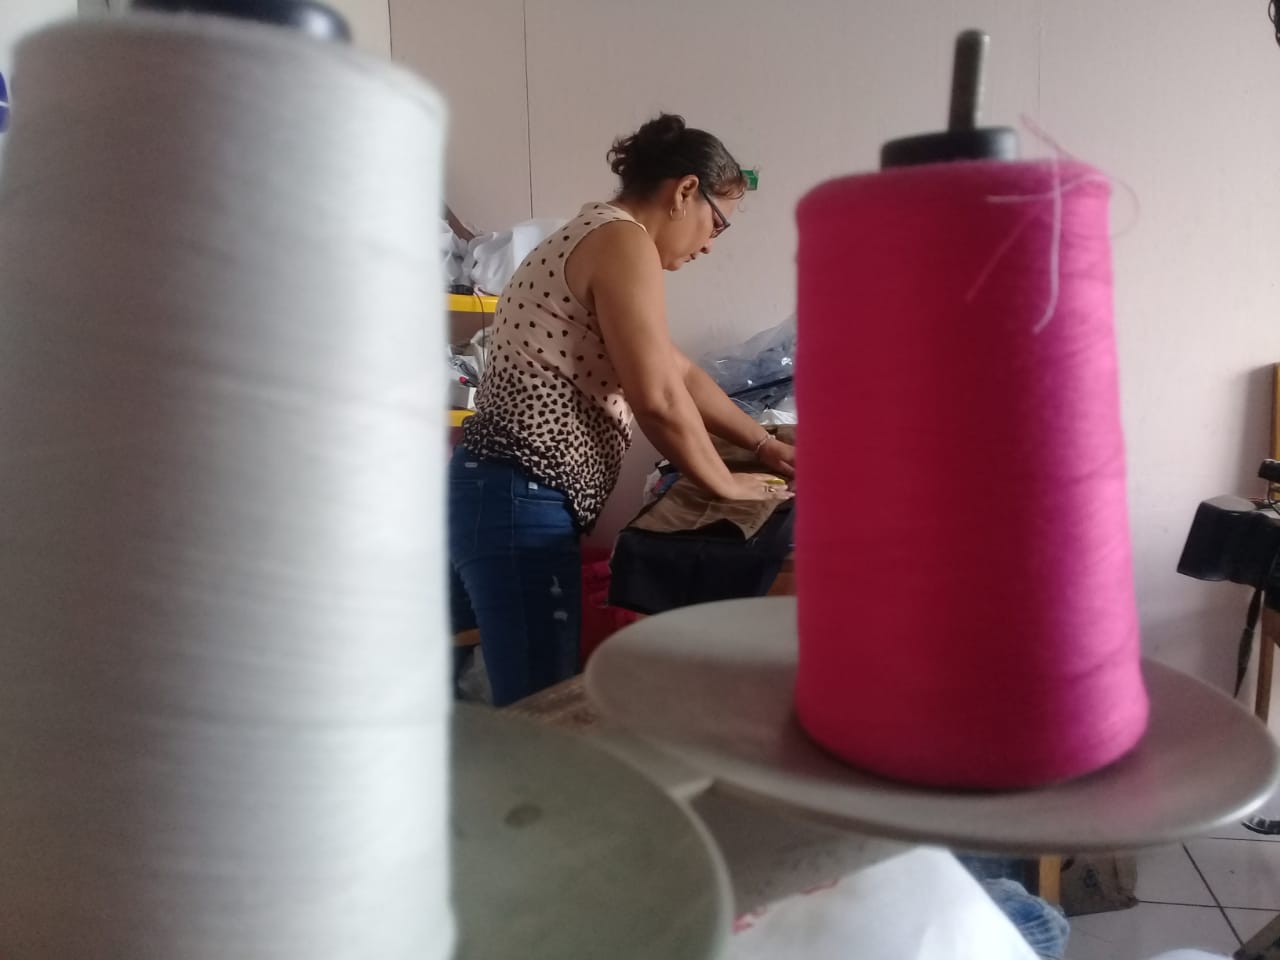 Los talleres de costura rápida en Nicaragua han resentido la crisis económica que enfrenta el país. Foto: Héctor Rosales